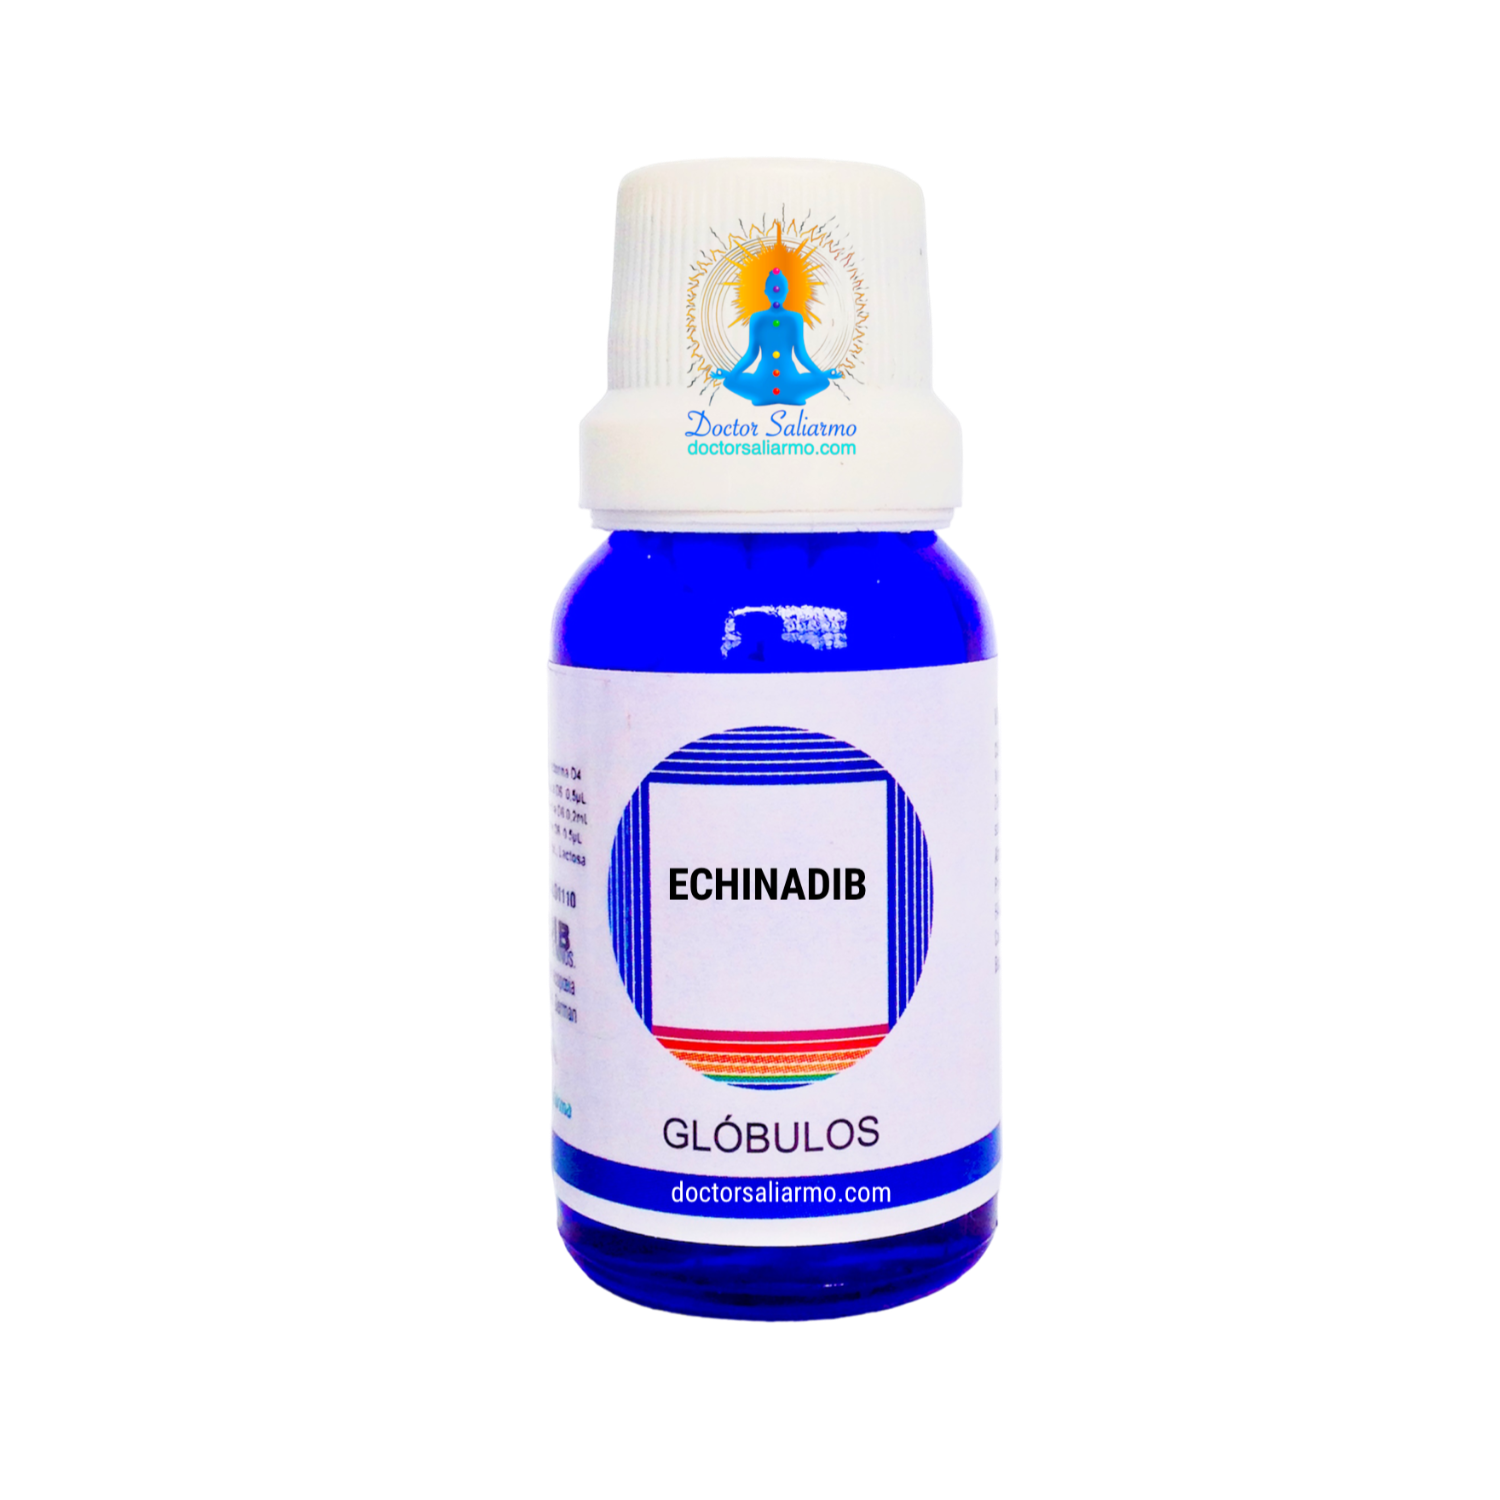 echinadib indicado para fortalecer el sistema inmune en múltiples infecciones como gripe, amigdalitis, fiebre e inflamación.